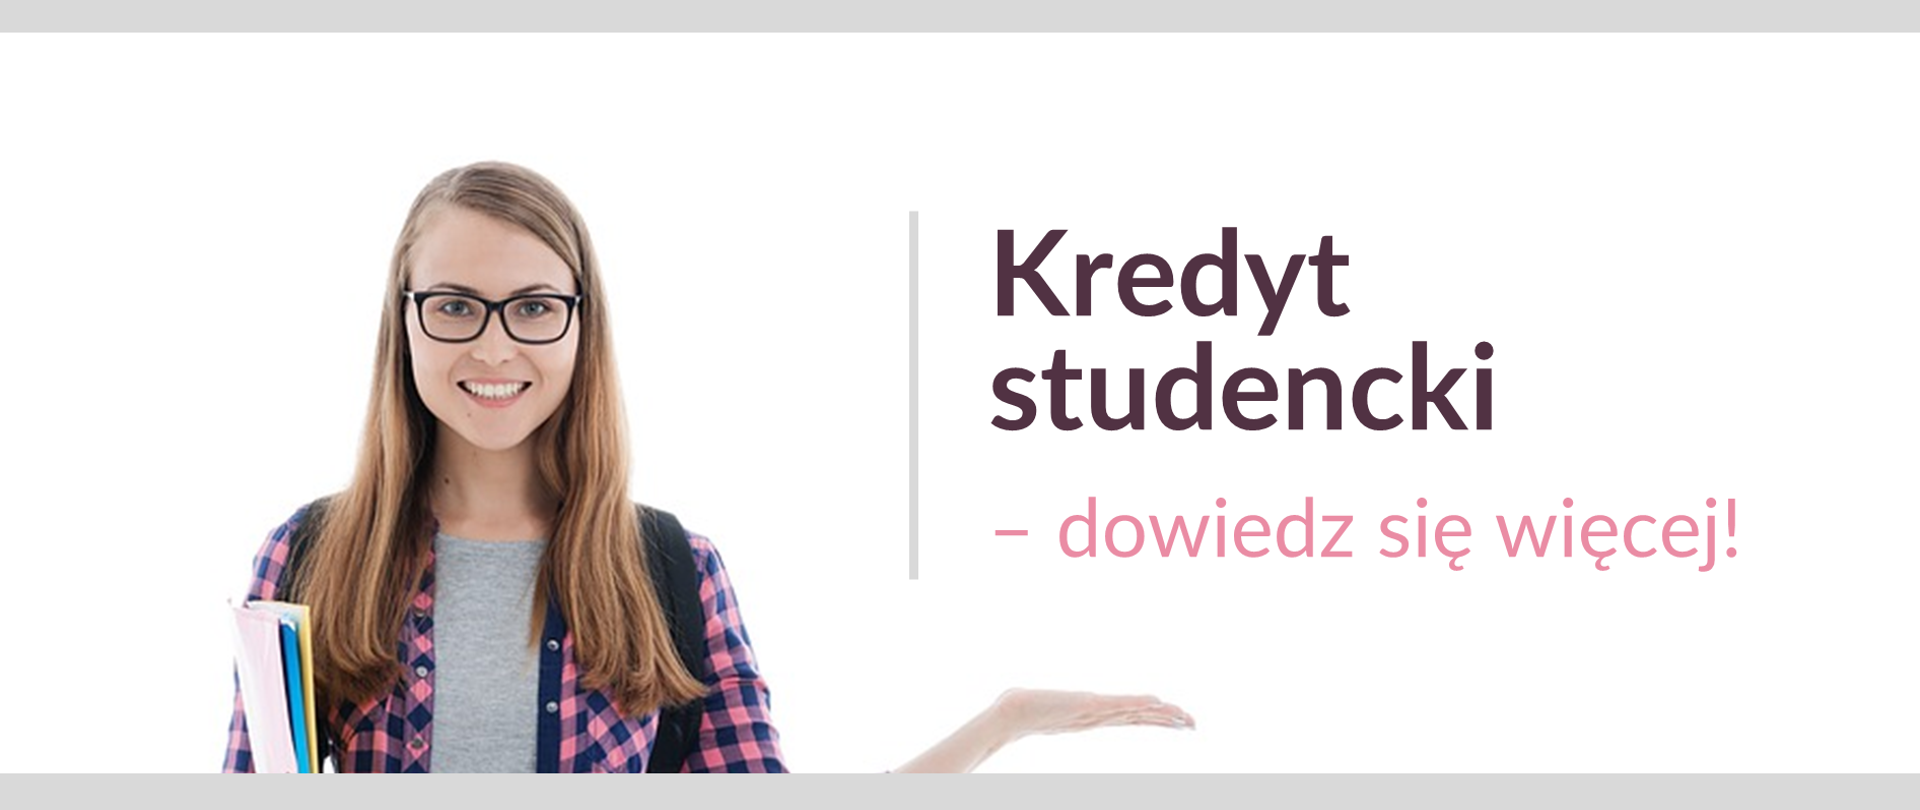 Uśmiechnięta studentka w okularach i tekst obok: "Kredyt studencki – dowiedz się więcej".